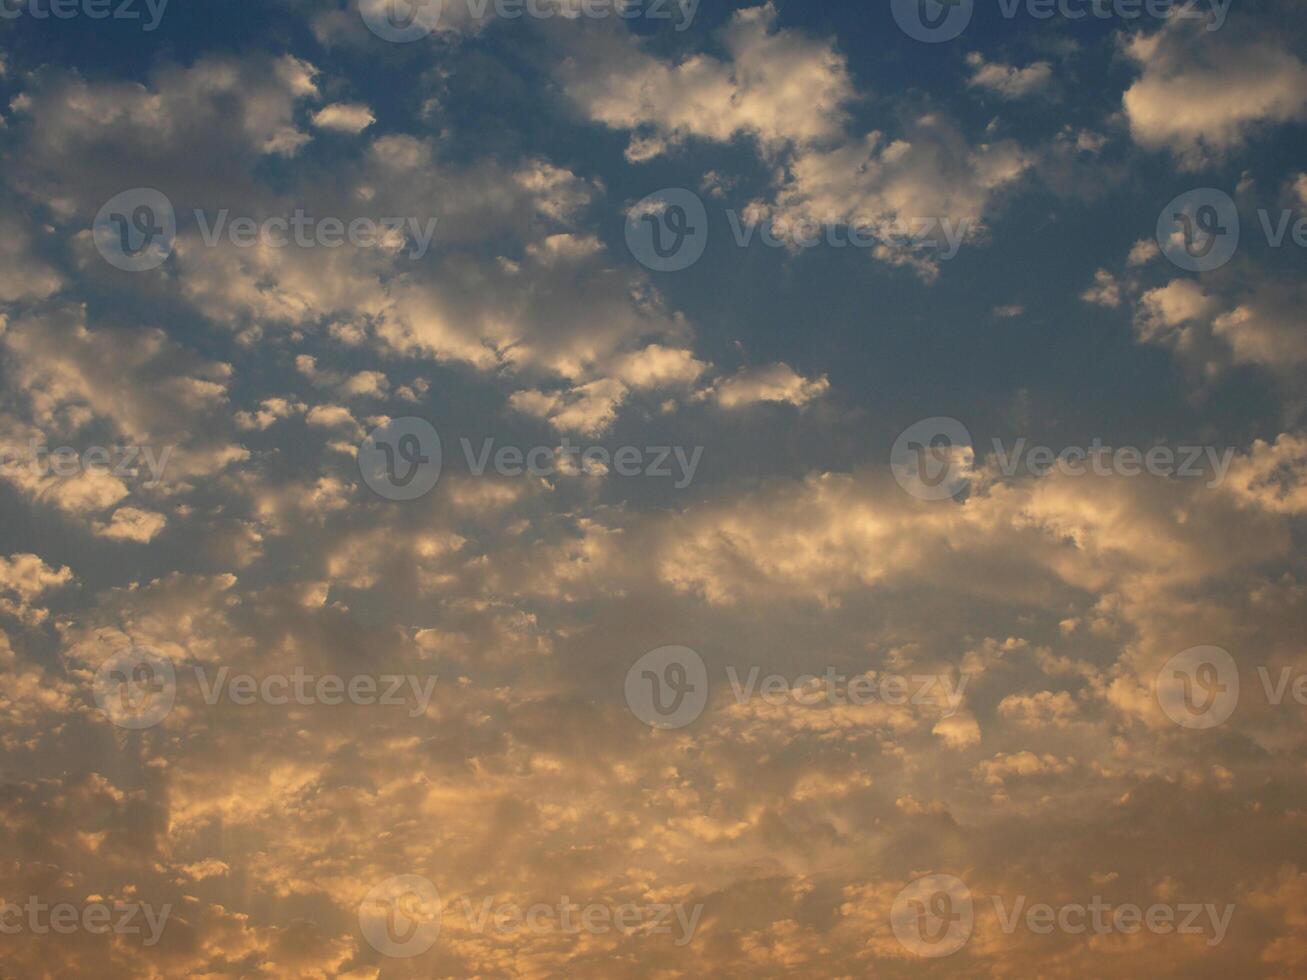 underbar himmel och blå moln Plats med ljuv ljus foto